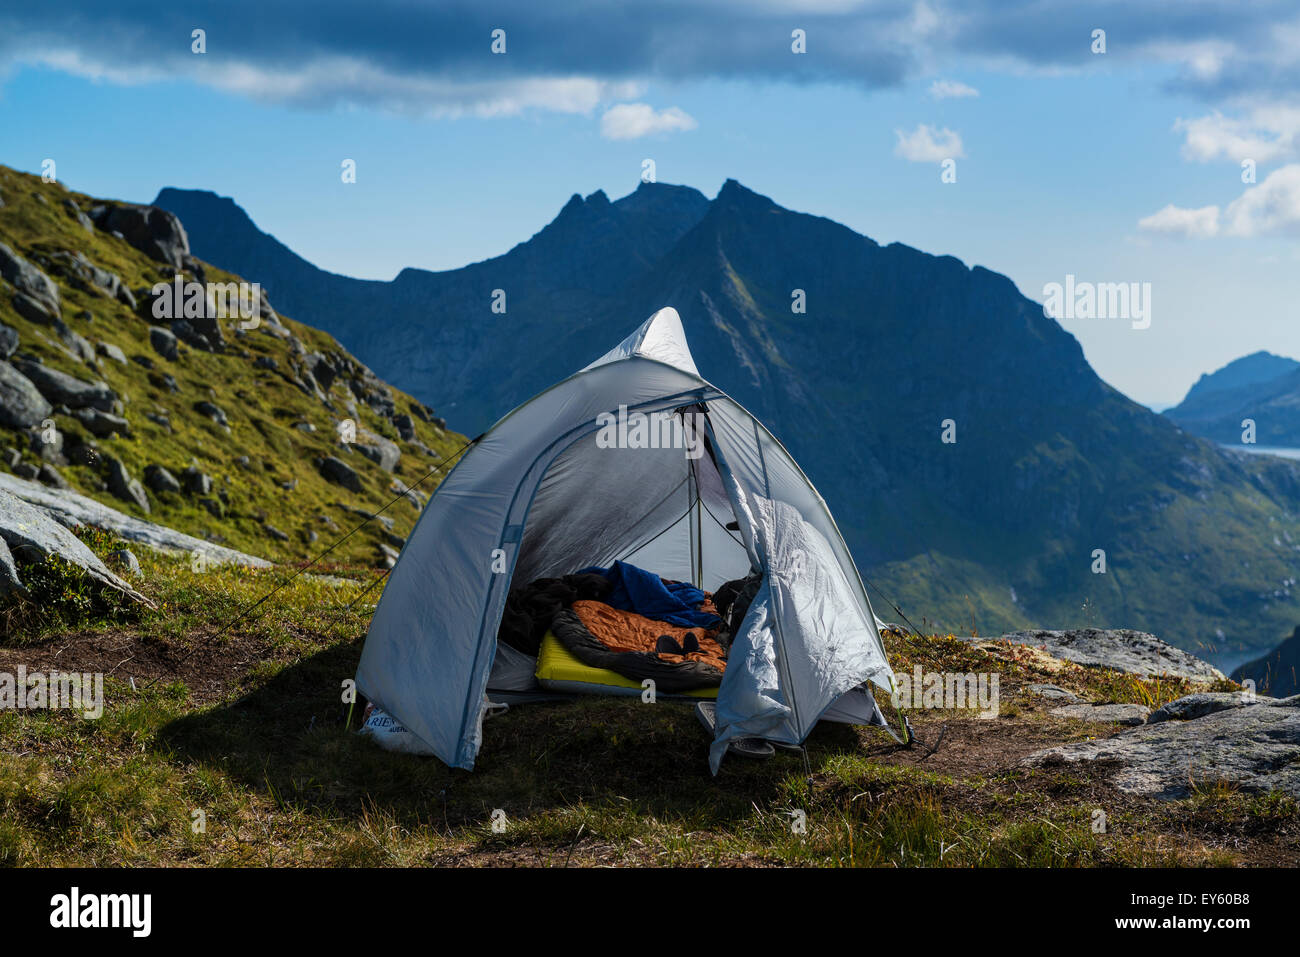 Tent camping in mountain landscape, Moskenesøy, Lofoten Islands, Norway Stock Photo